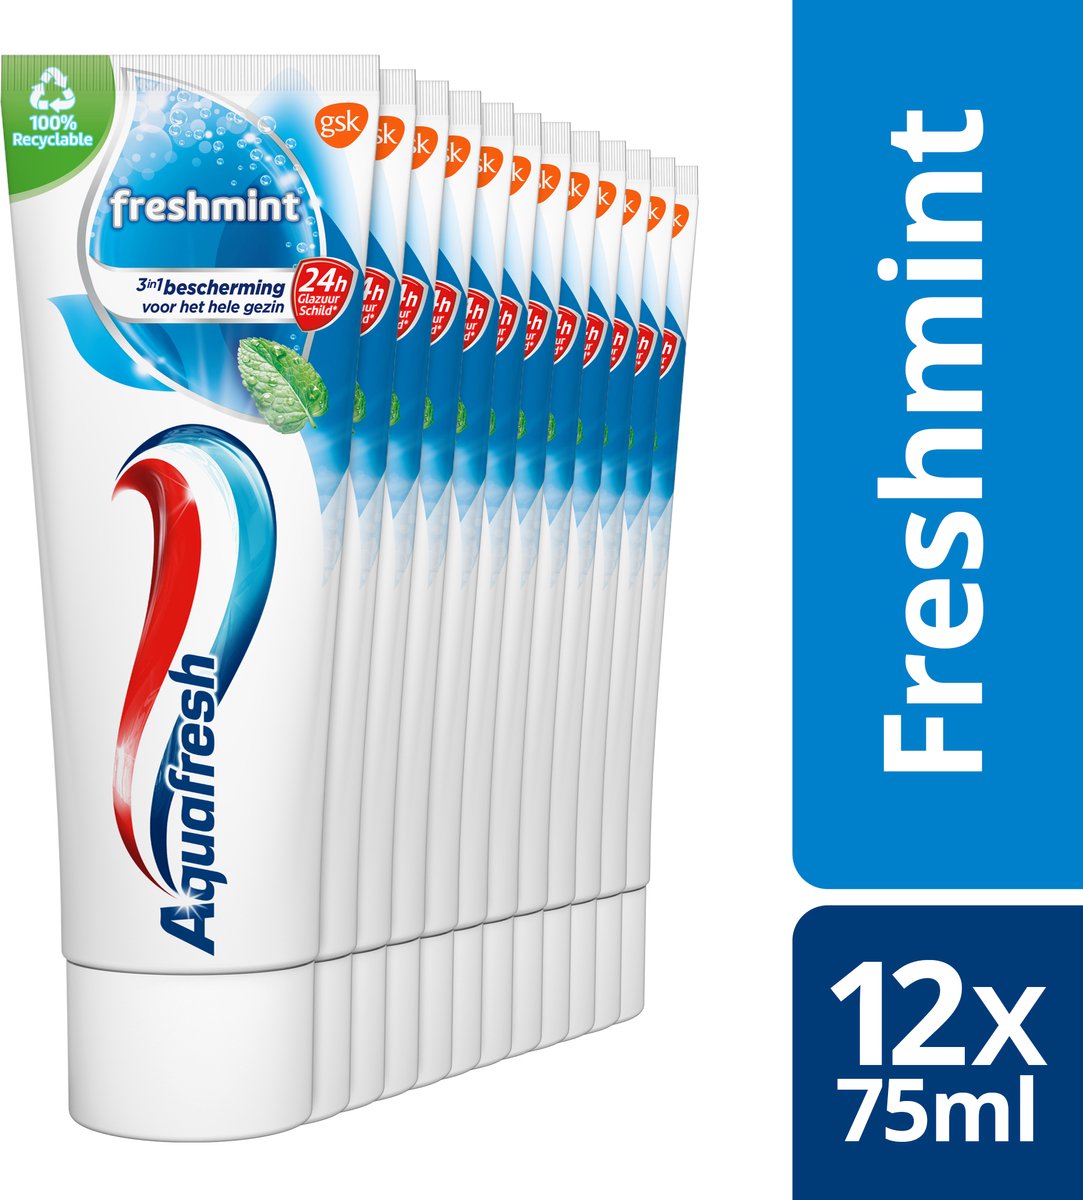 Aquafresh - Freshmint - 3in1 Tandpasta - Voor een frisse adem - Voordeelverpakking 12 x 75ml, recyclebare plastic tube en dop - Aquafresh